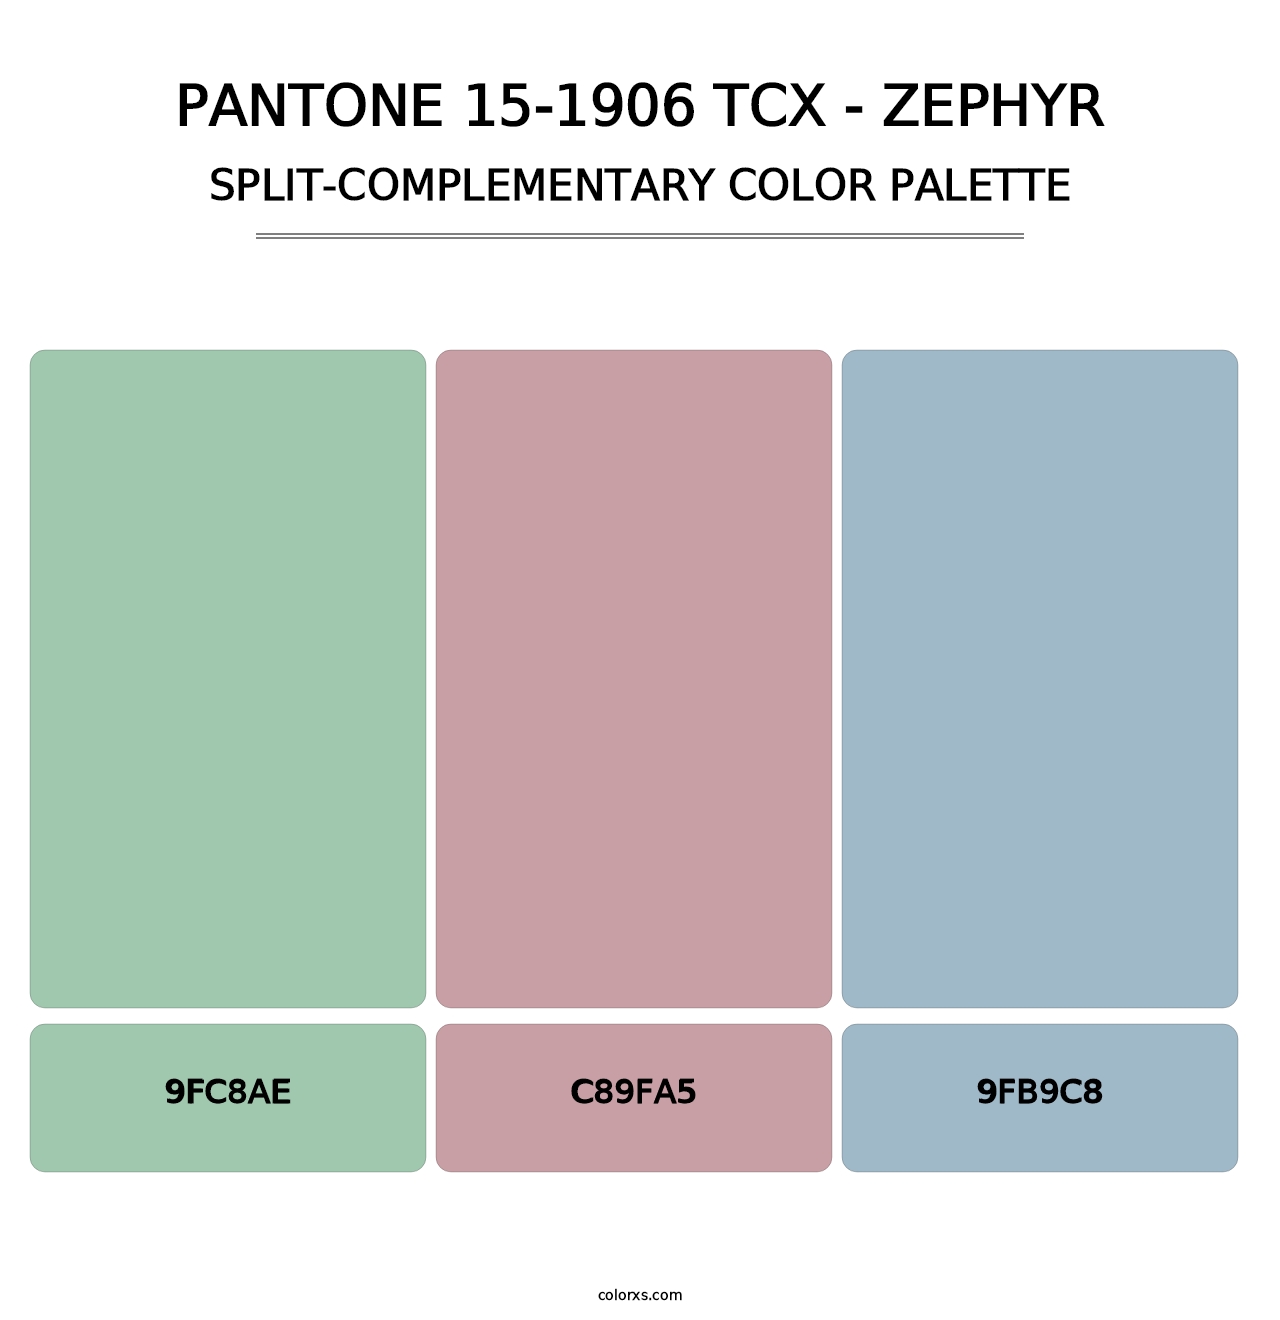 PANTONE 15-1906 TCX - Zephyr - Split-Complementary Color Palette